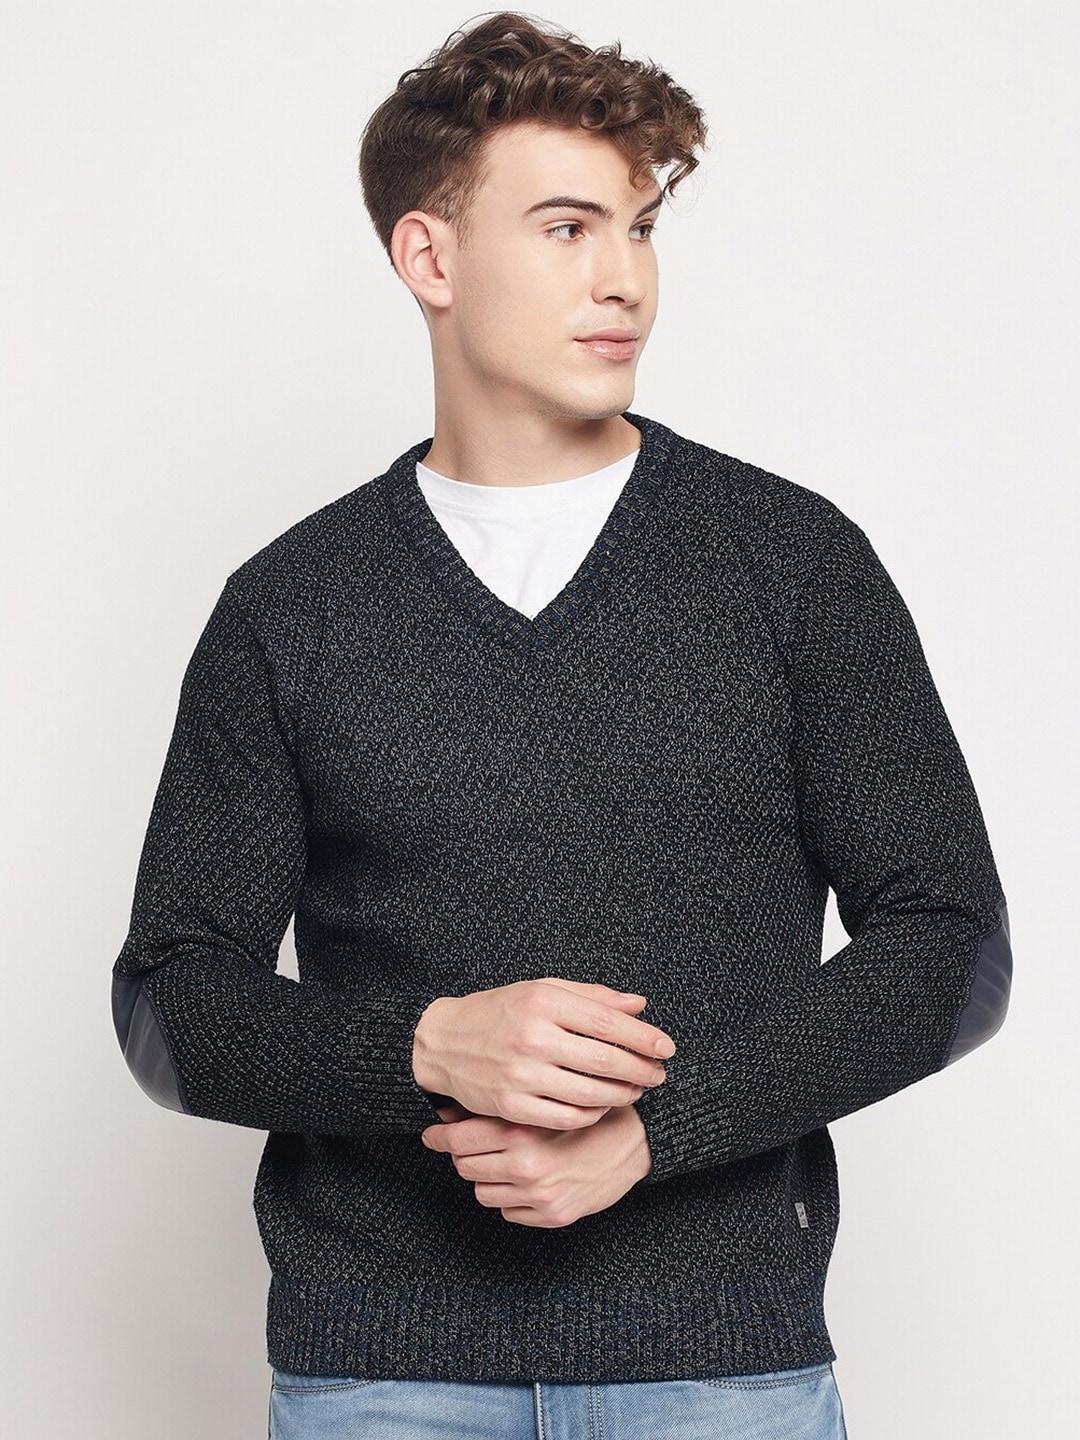 duke-men-black-ribbed-v-neck-long-sleeves-pullover-sweater